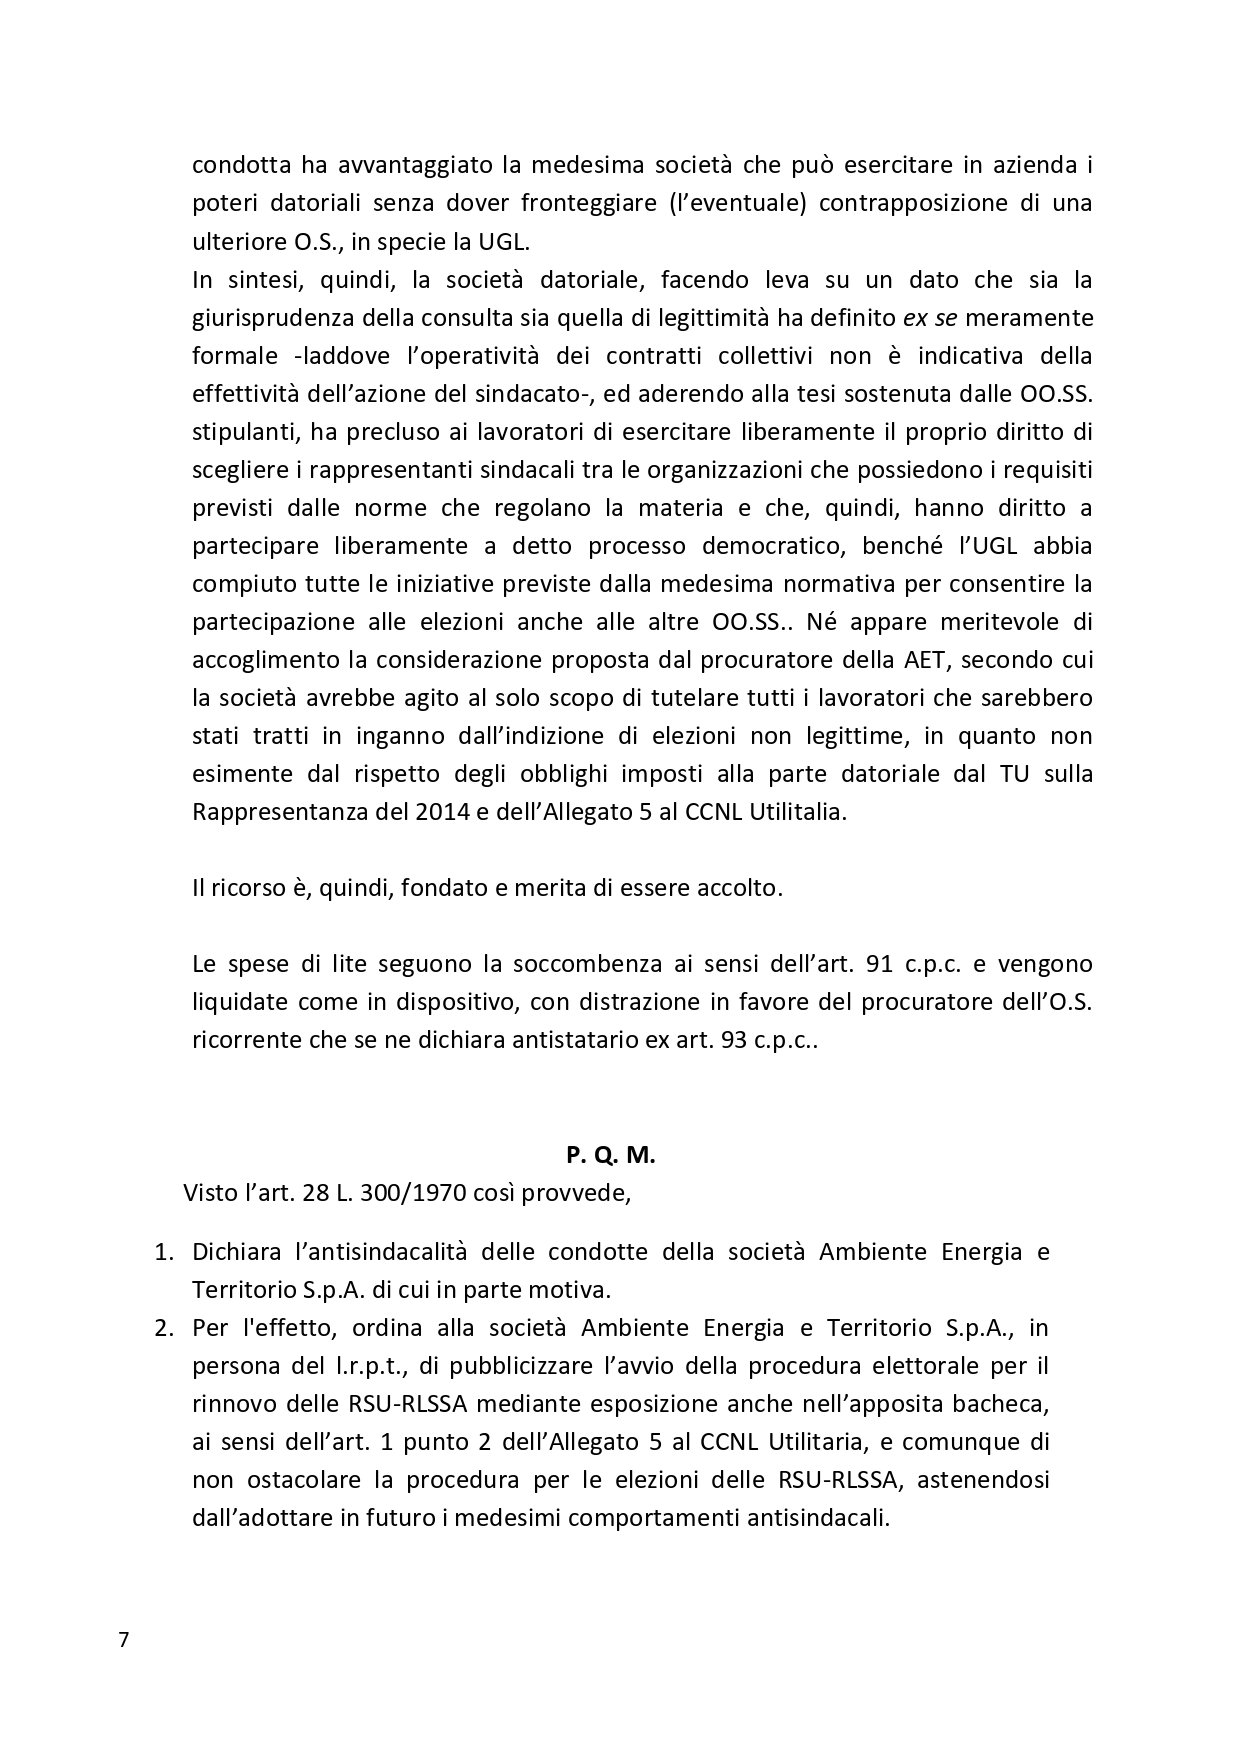 Decreto UGL Ambiente 1 page 0007